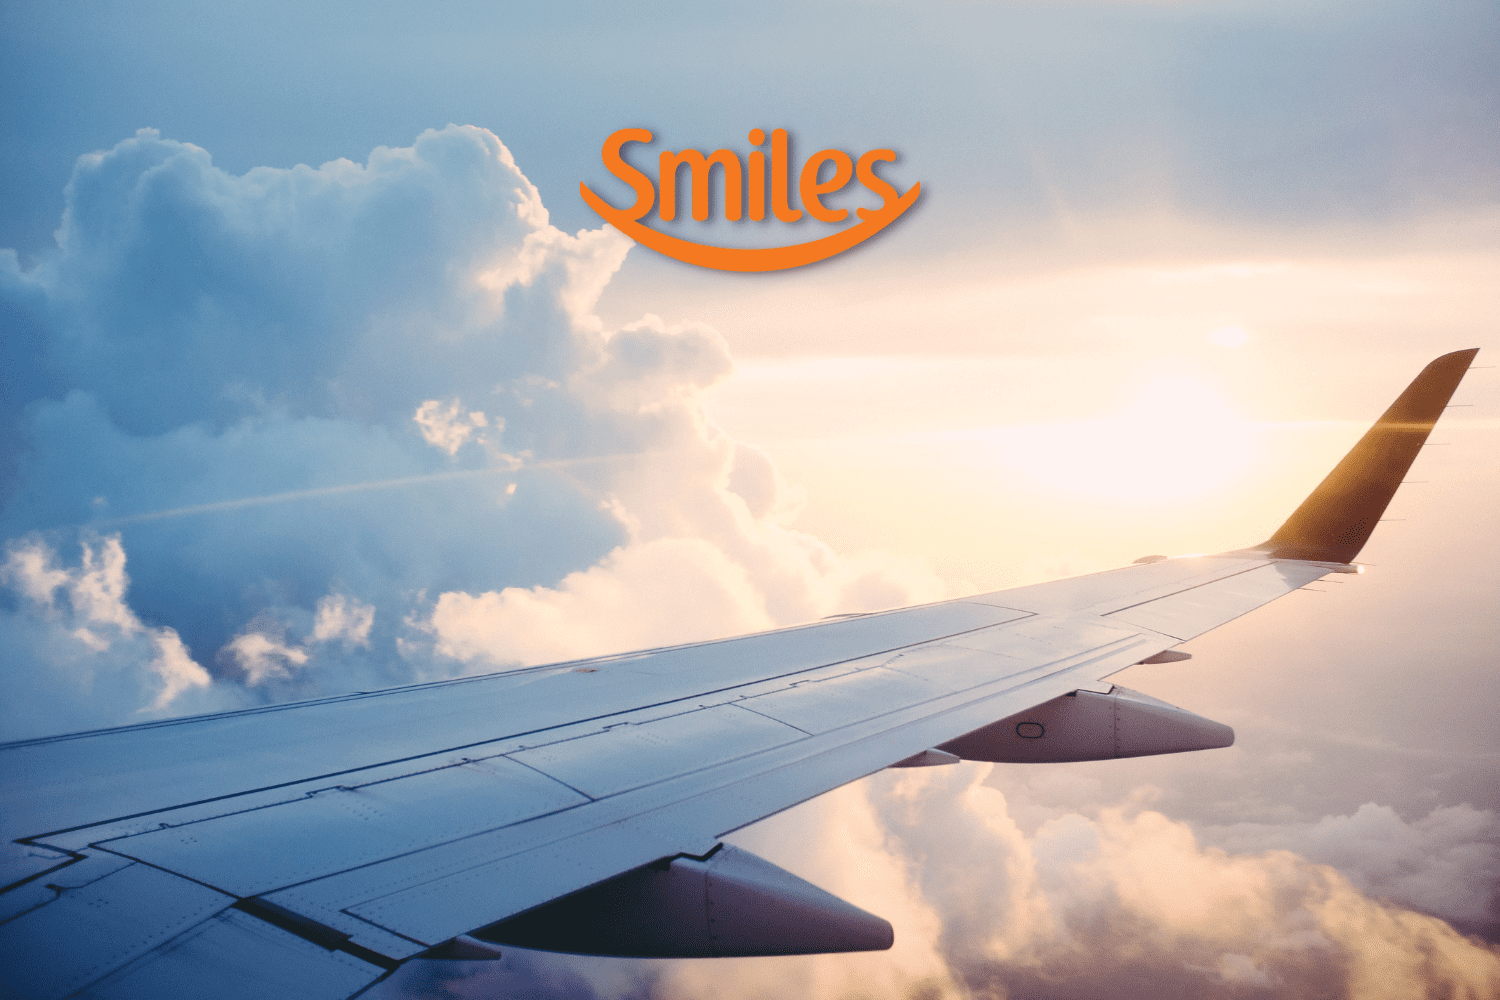 asa do avião com logo Smiles Clube Smiles